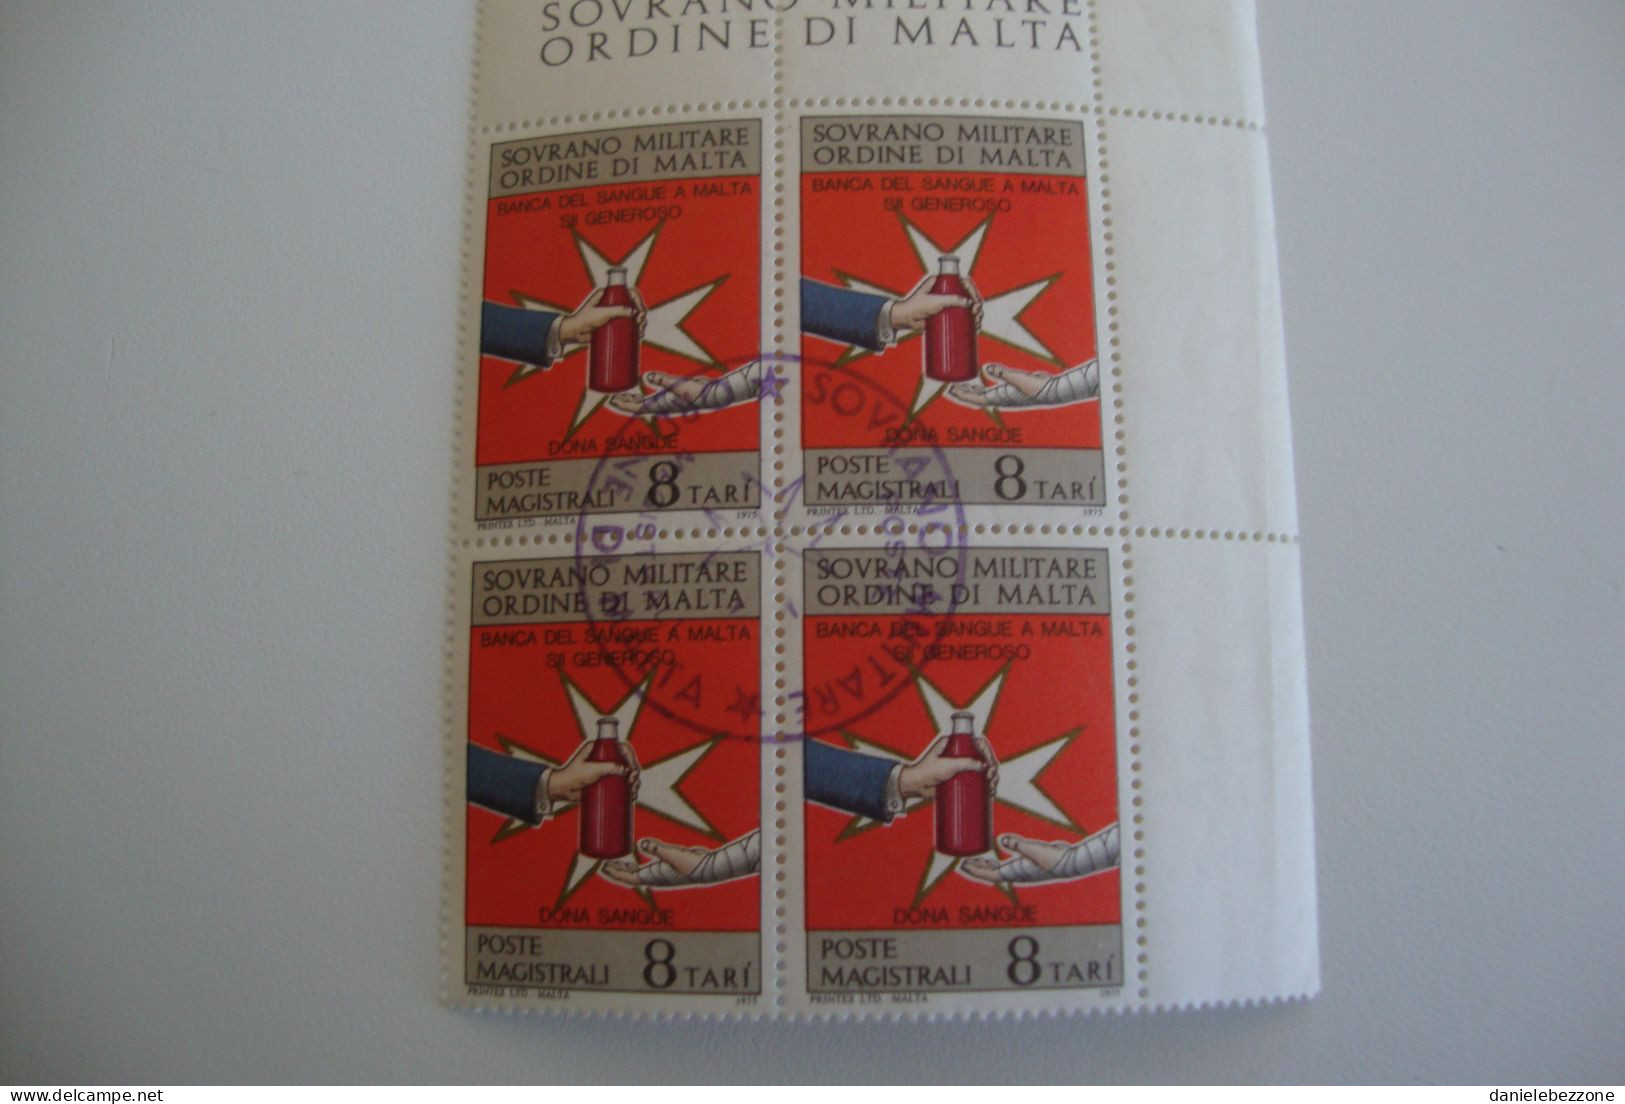 quartine annullate perfette ordine di Malta